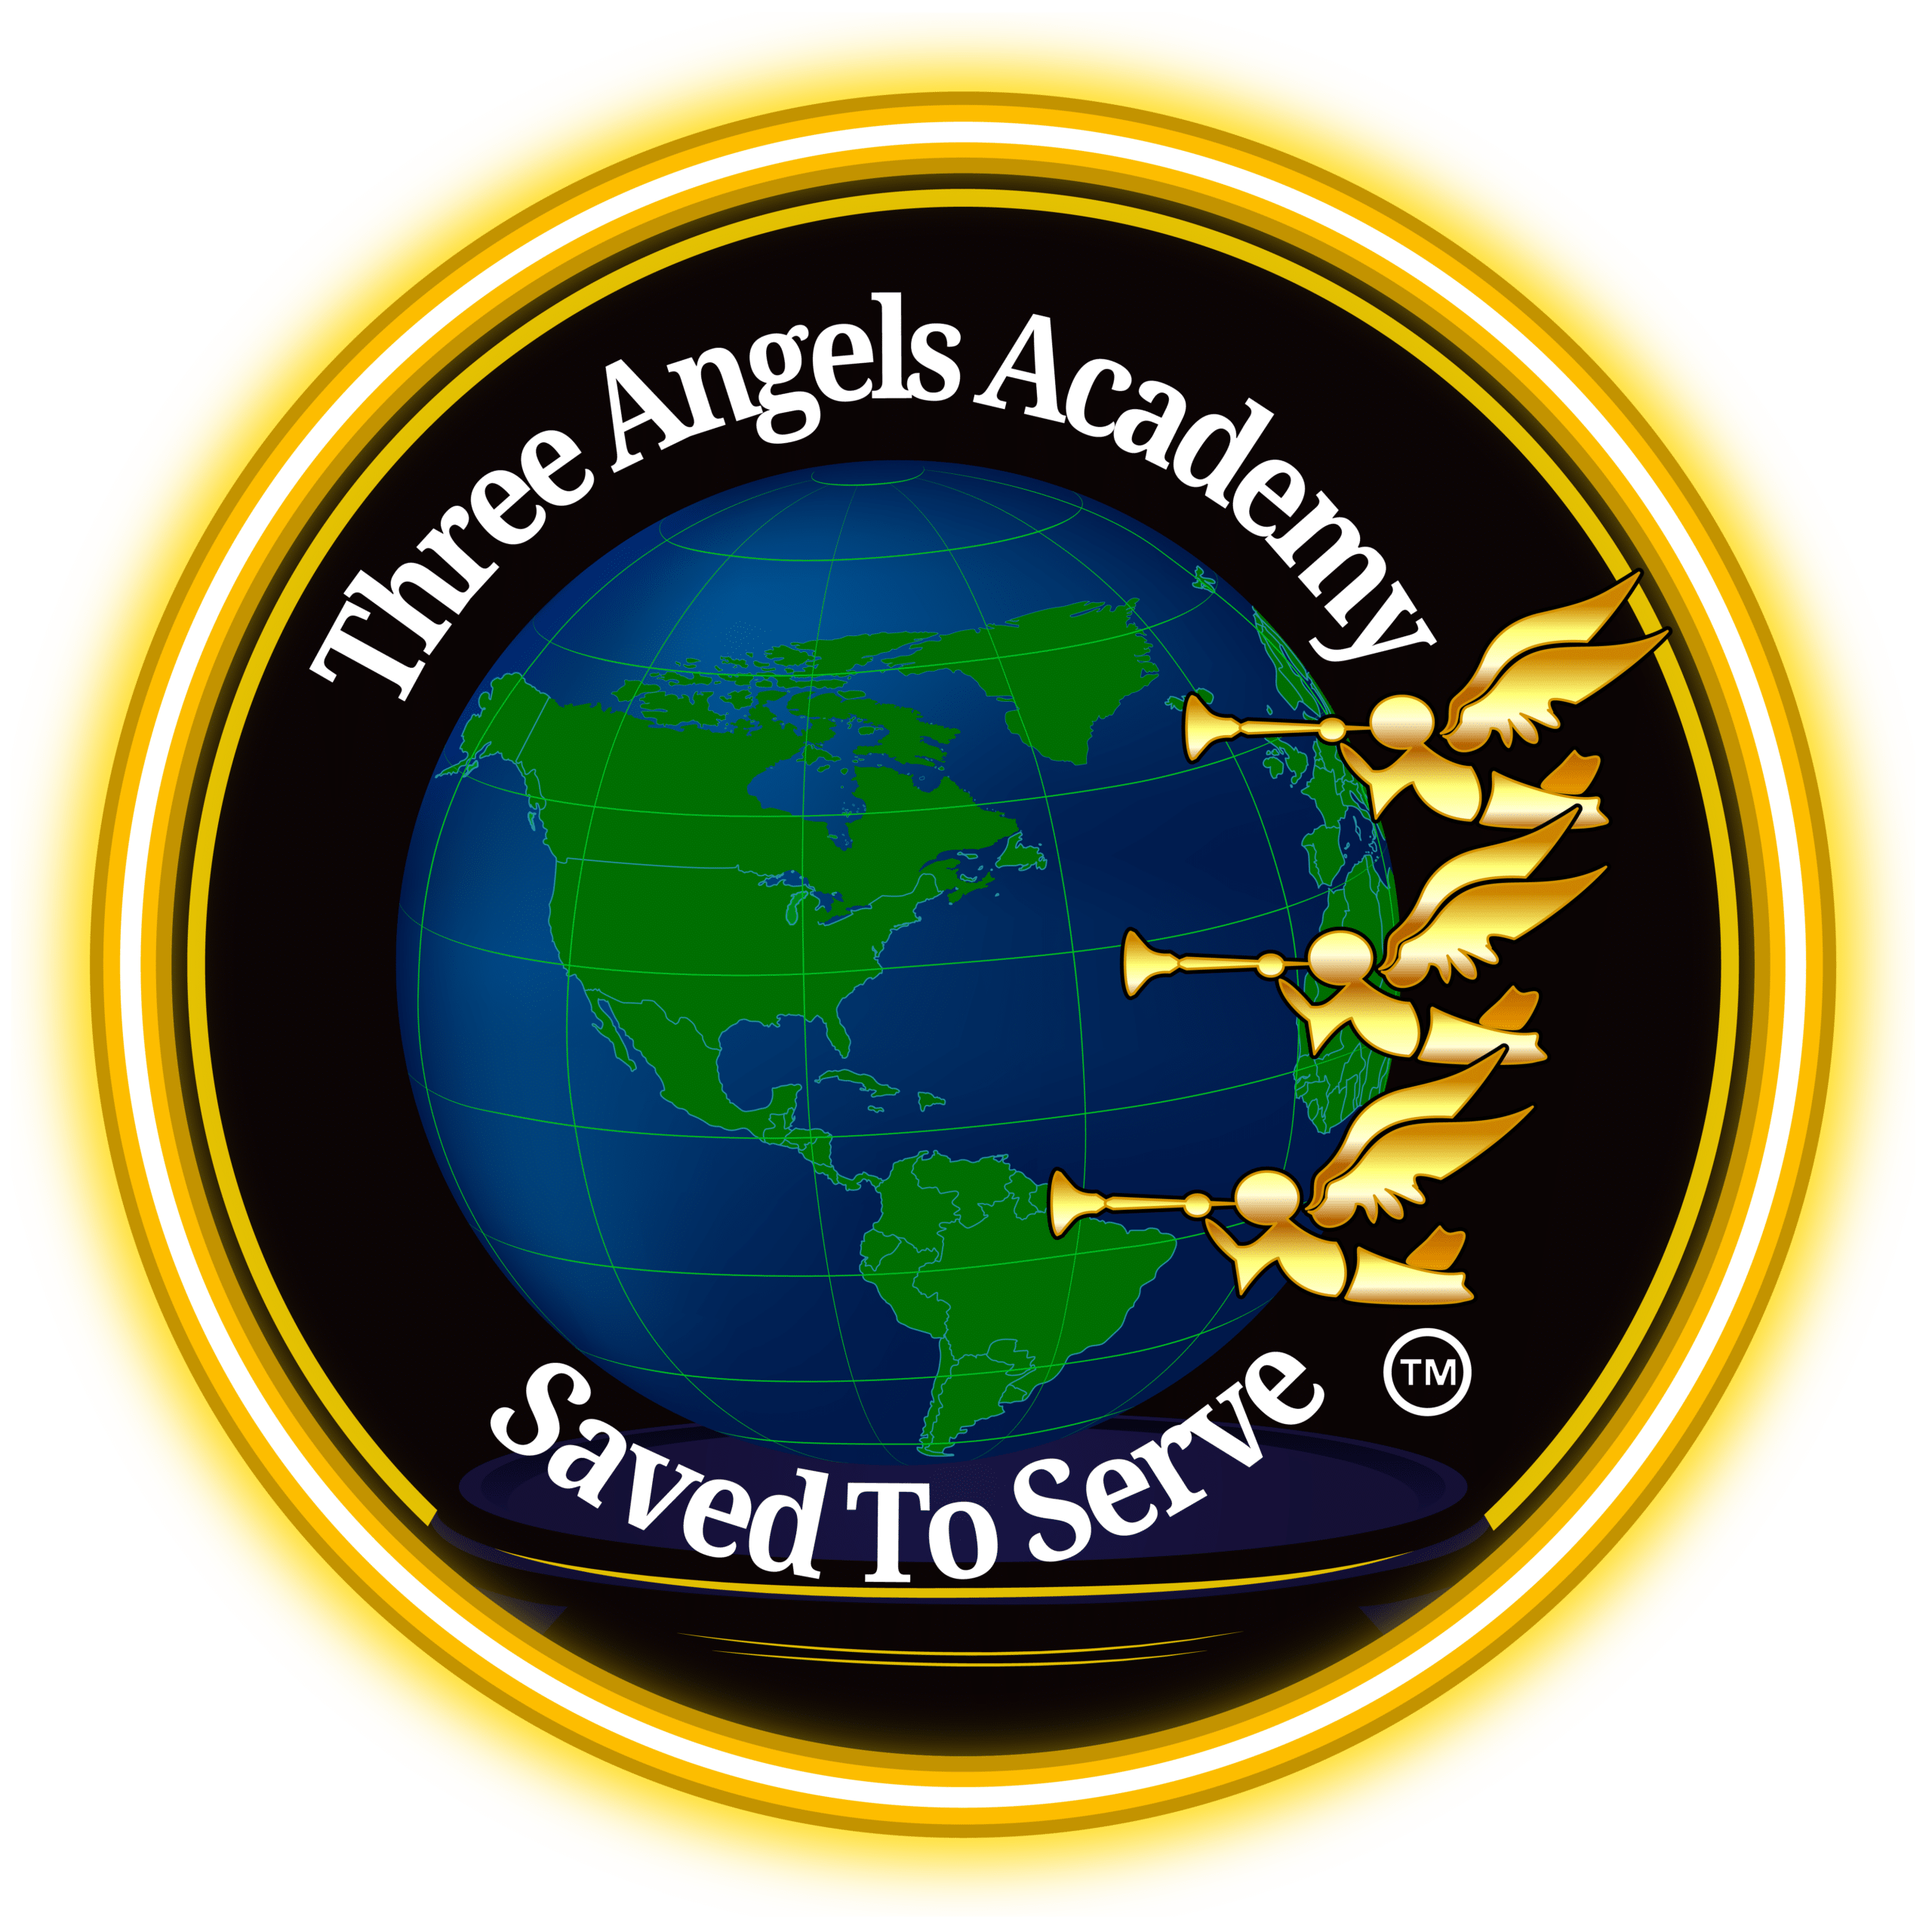 Three Angels Academy (3AA)